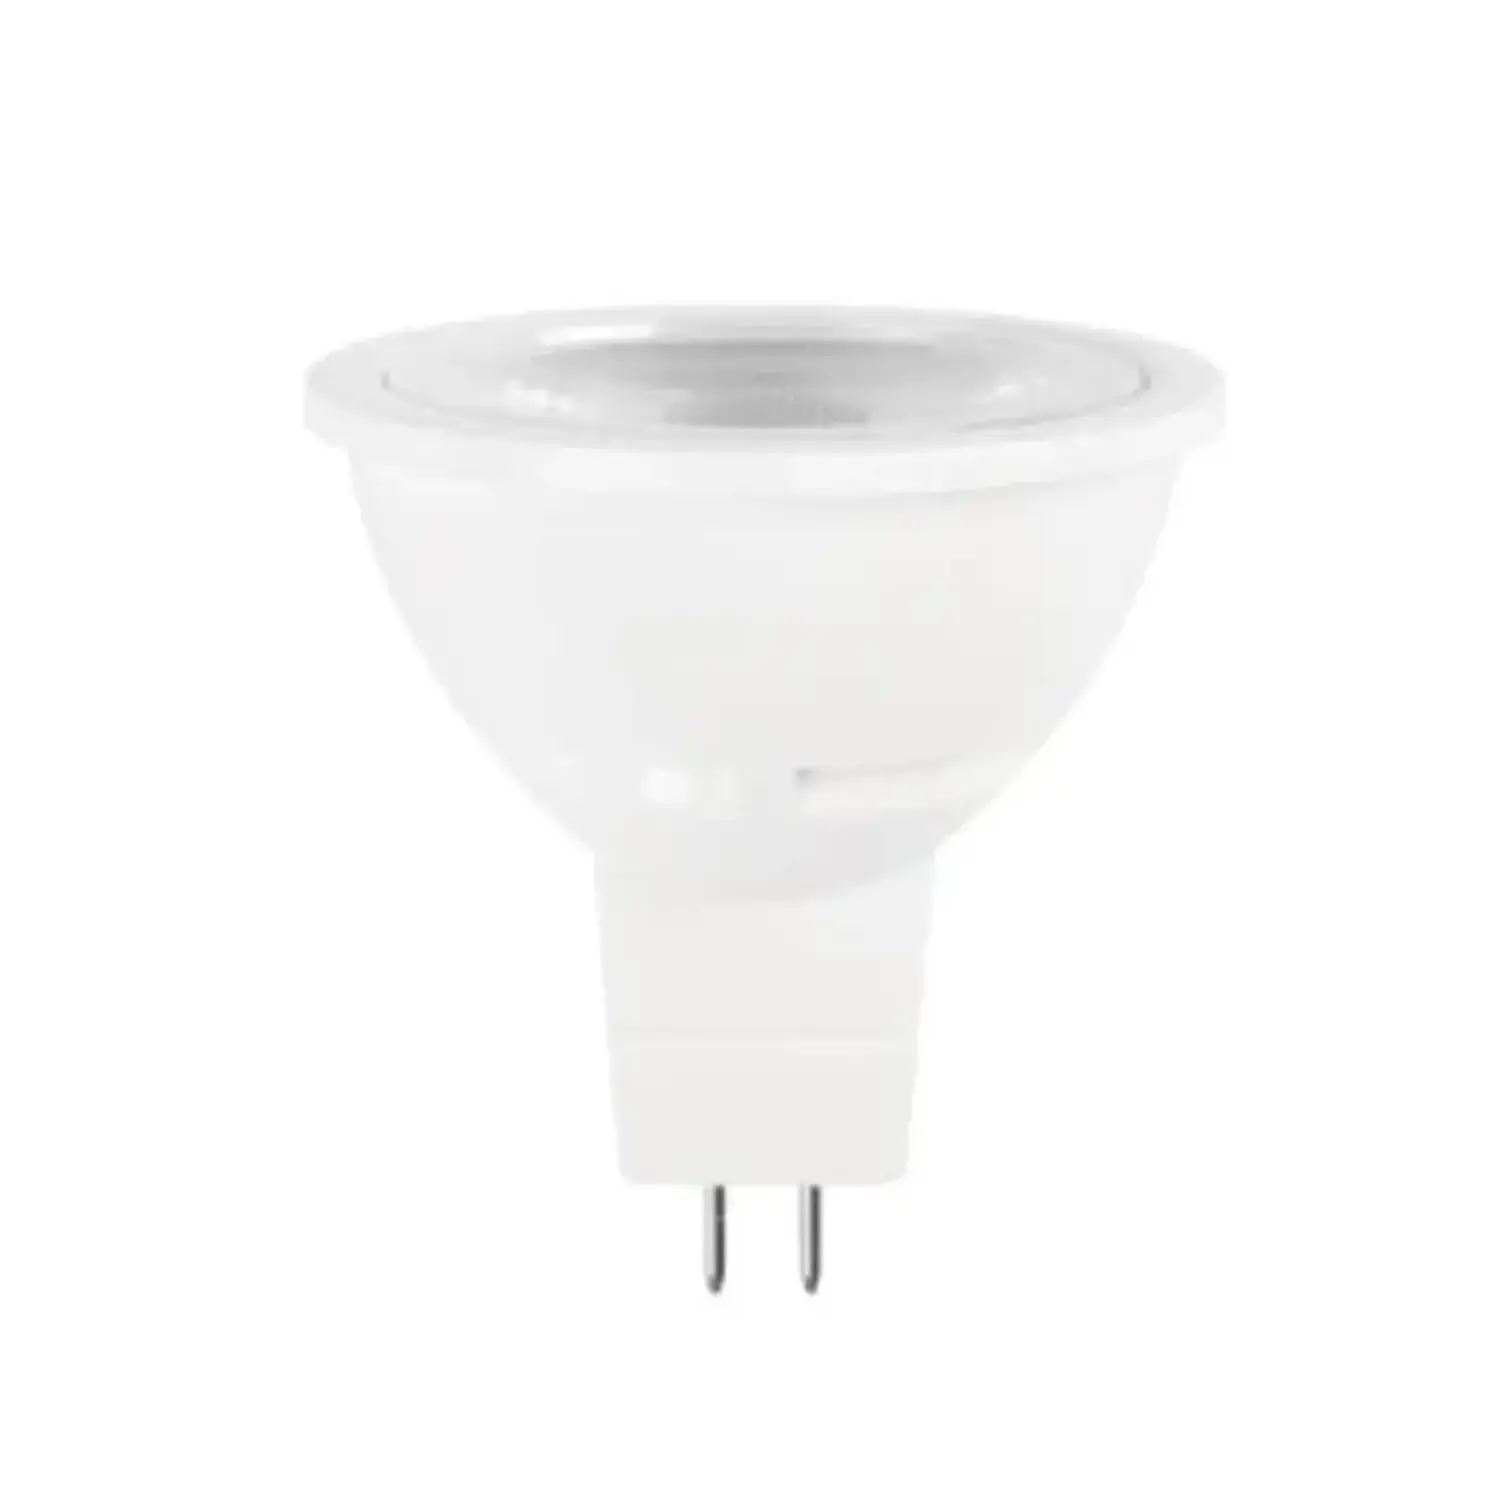 immagine del prodotto lampadina led mr16 12 volt ac-dc faretti gx5,3 6 watt bianco freddo